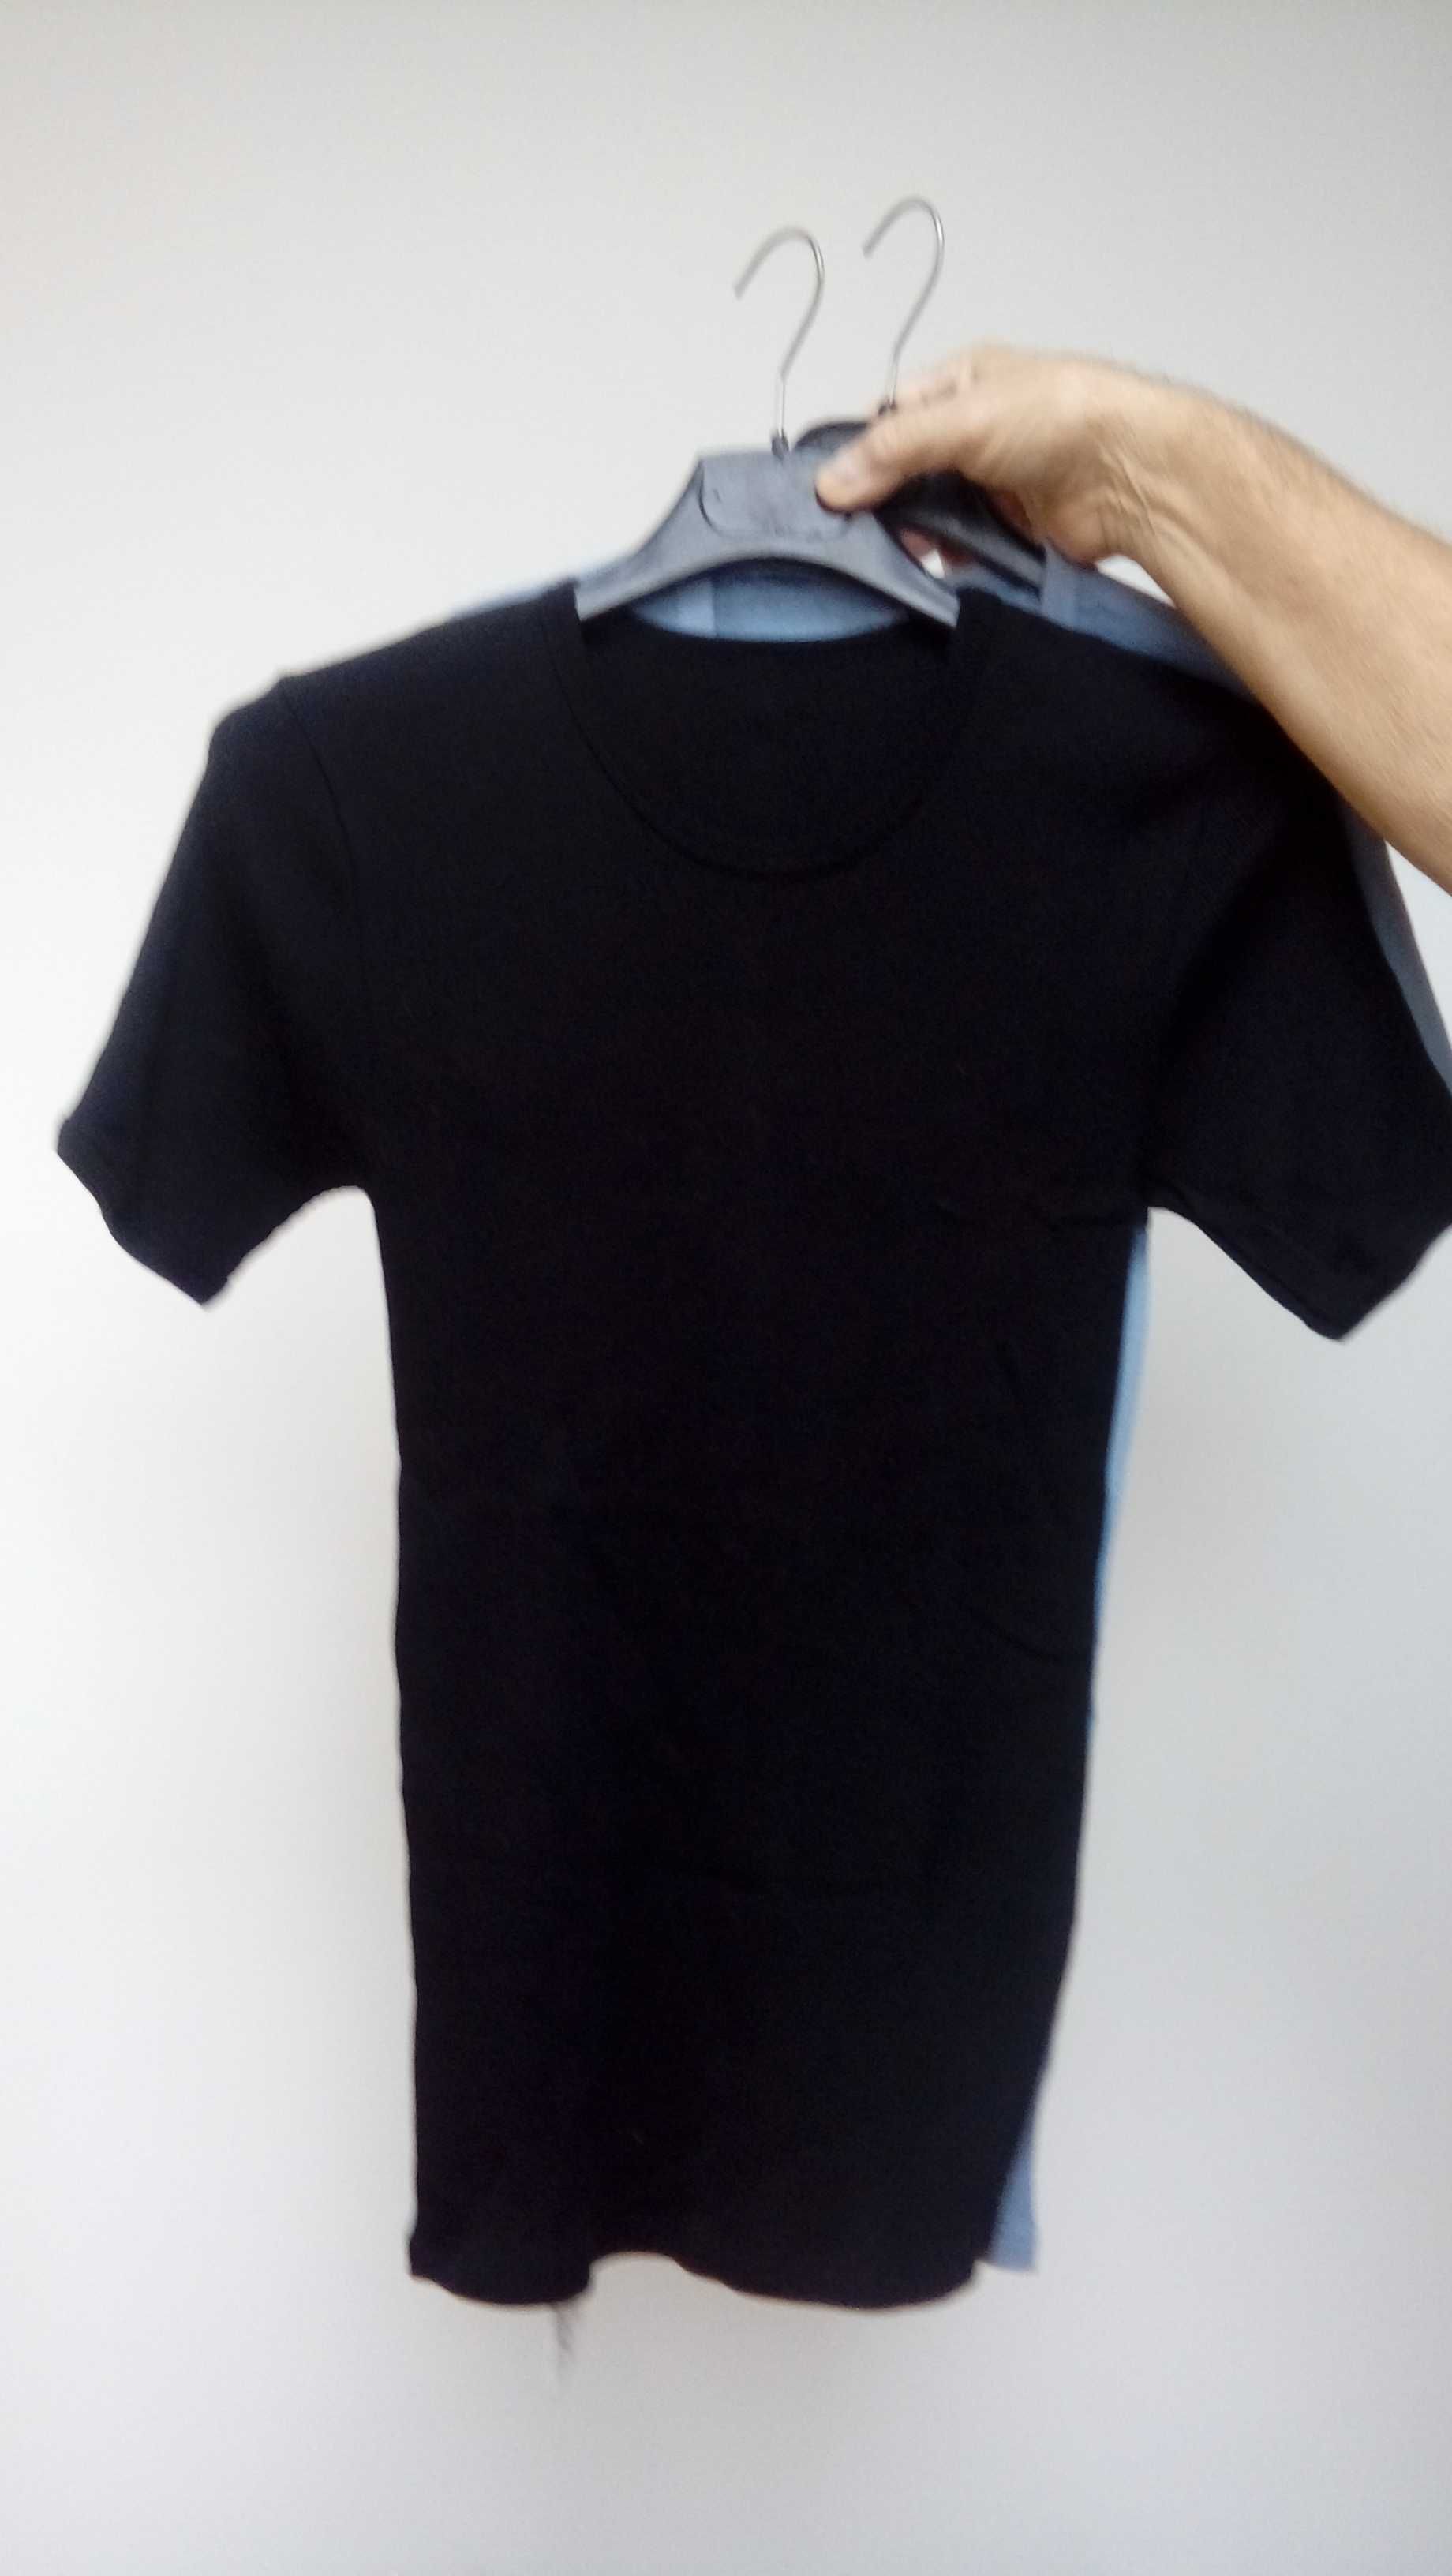 T-shirt czarna koszulka krótki rękaw polski wyrób XXL